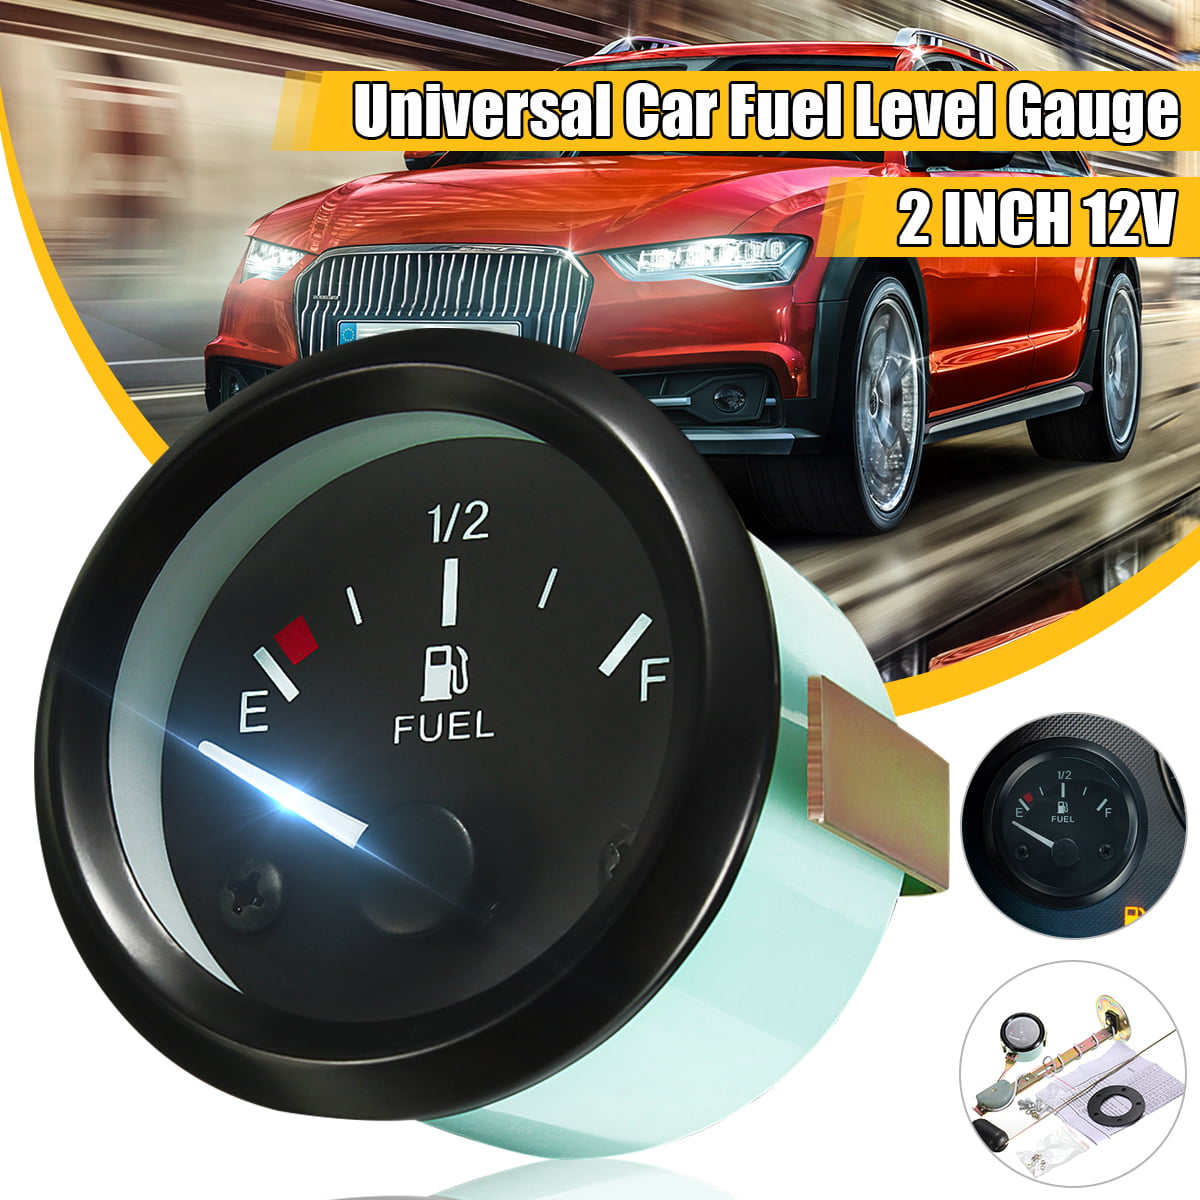 Fuel Level Gauge 52mm Universal Car Fuel Level Gauge LED Digital E-1/2-F Range Meter with Fuel Sensor Car Fuel Gauge